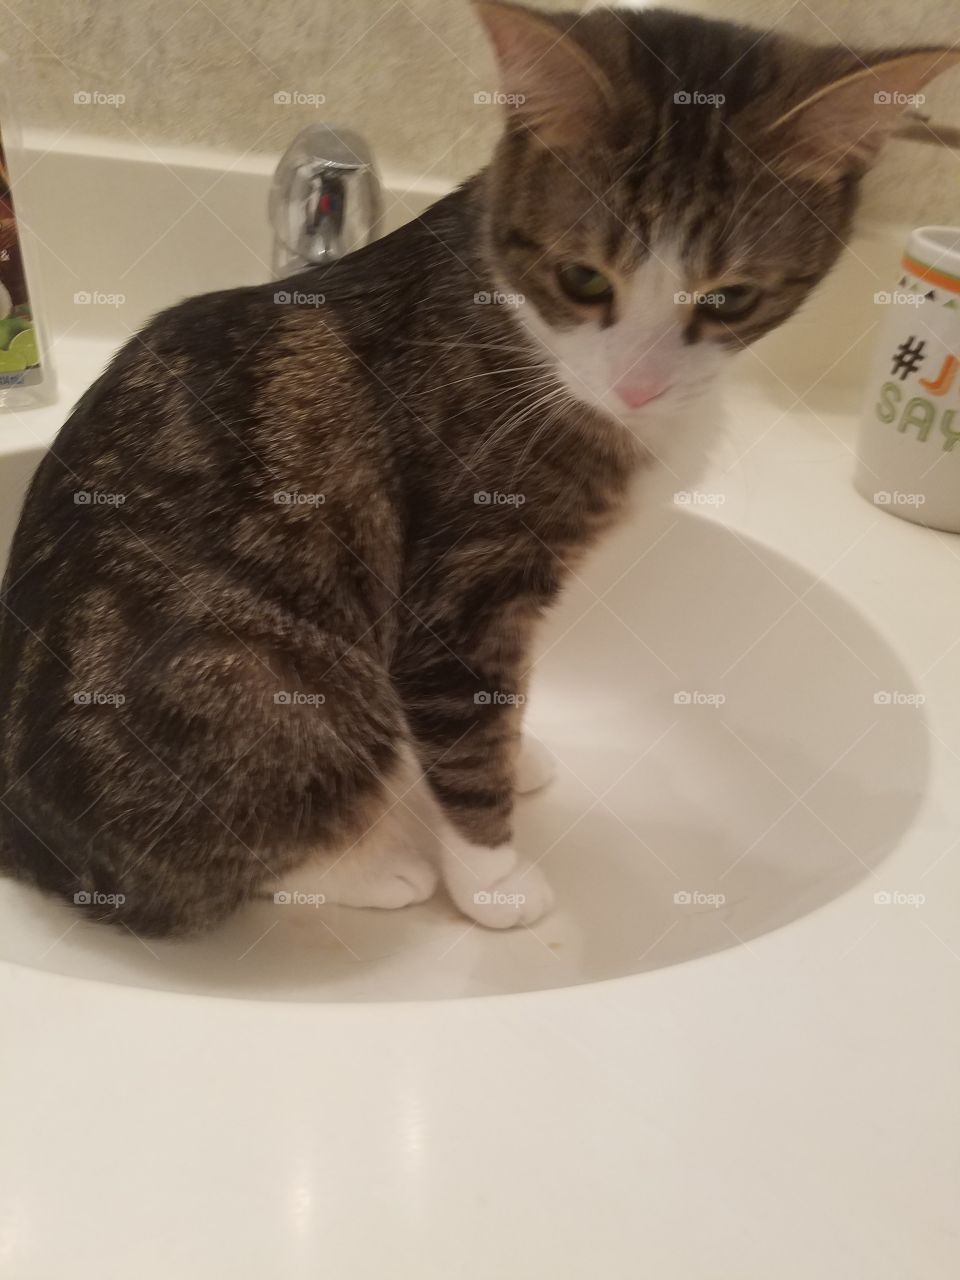 Belle in sink